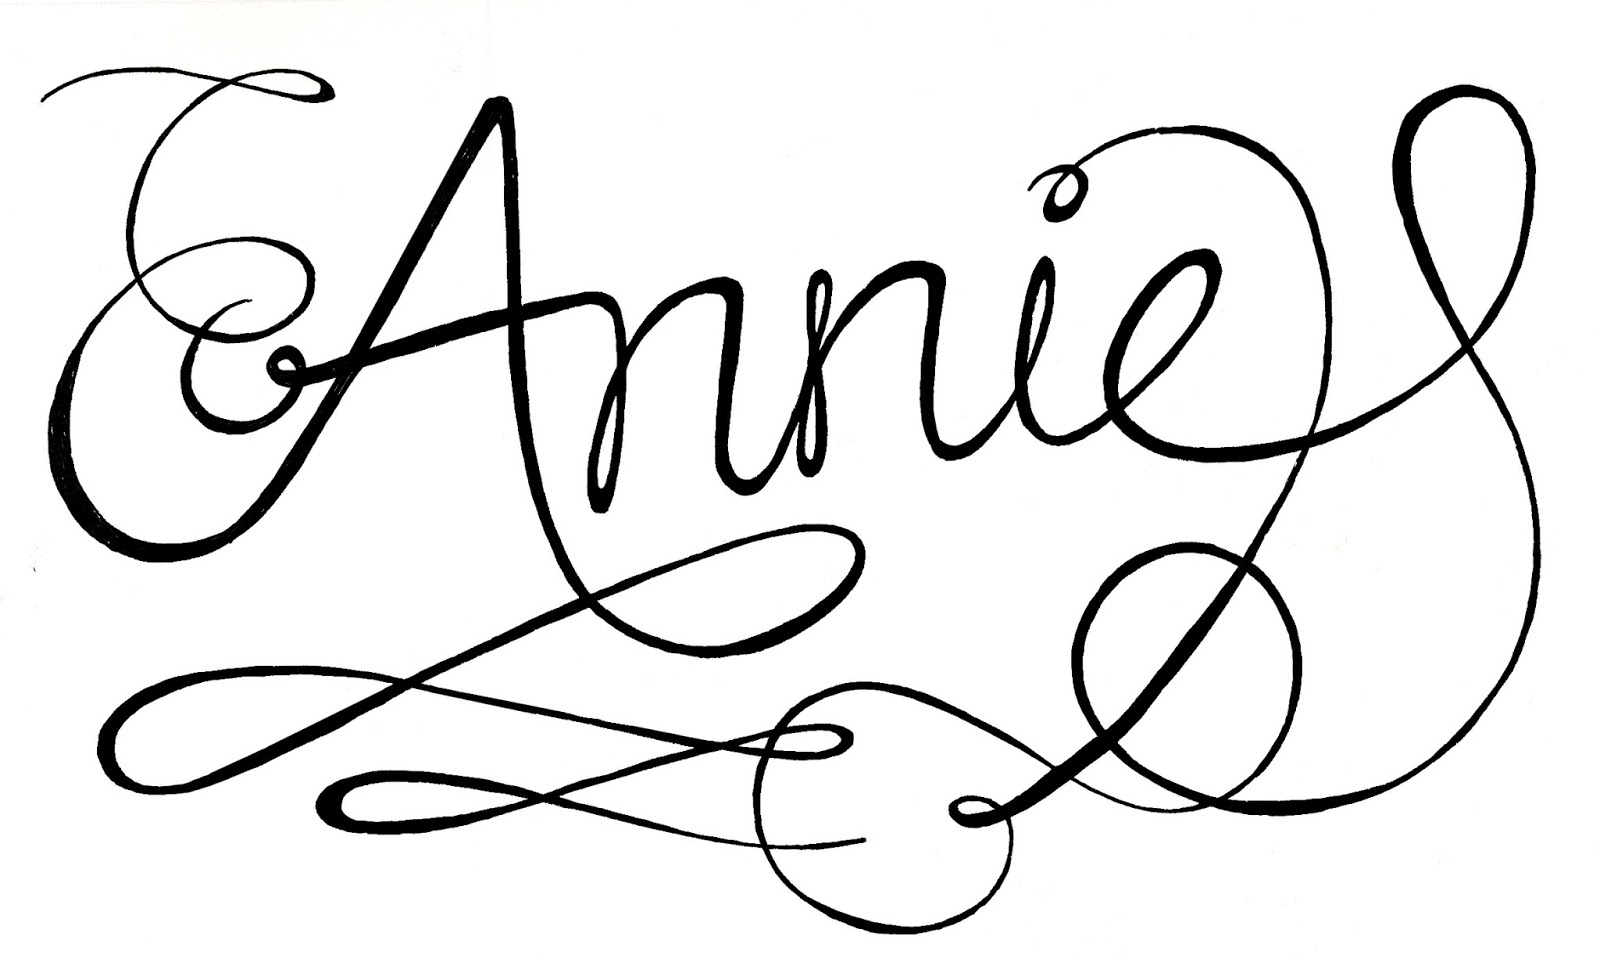 Annie Ink: June 2013